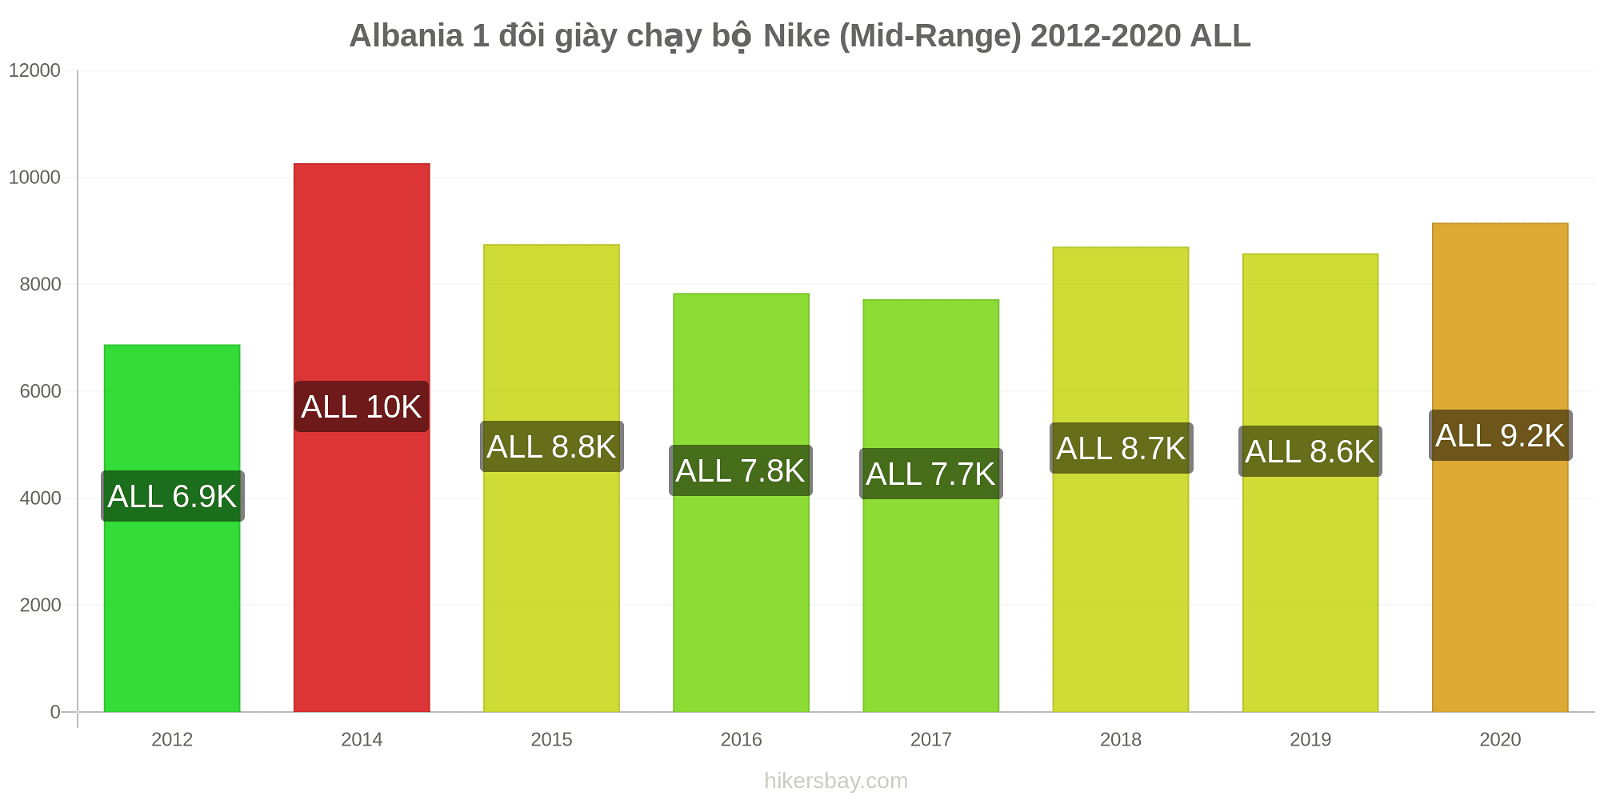 Albania thay đổi giá 1 đôi giày chạy bộ Nike (Mid-Range) hikersbay.com